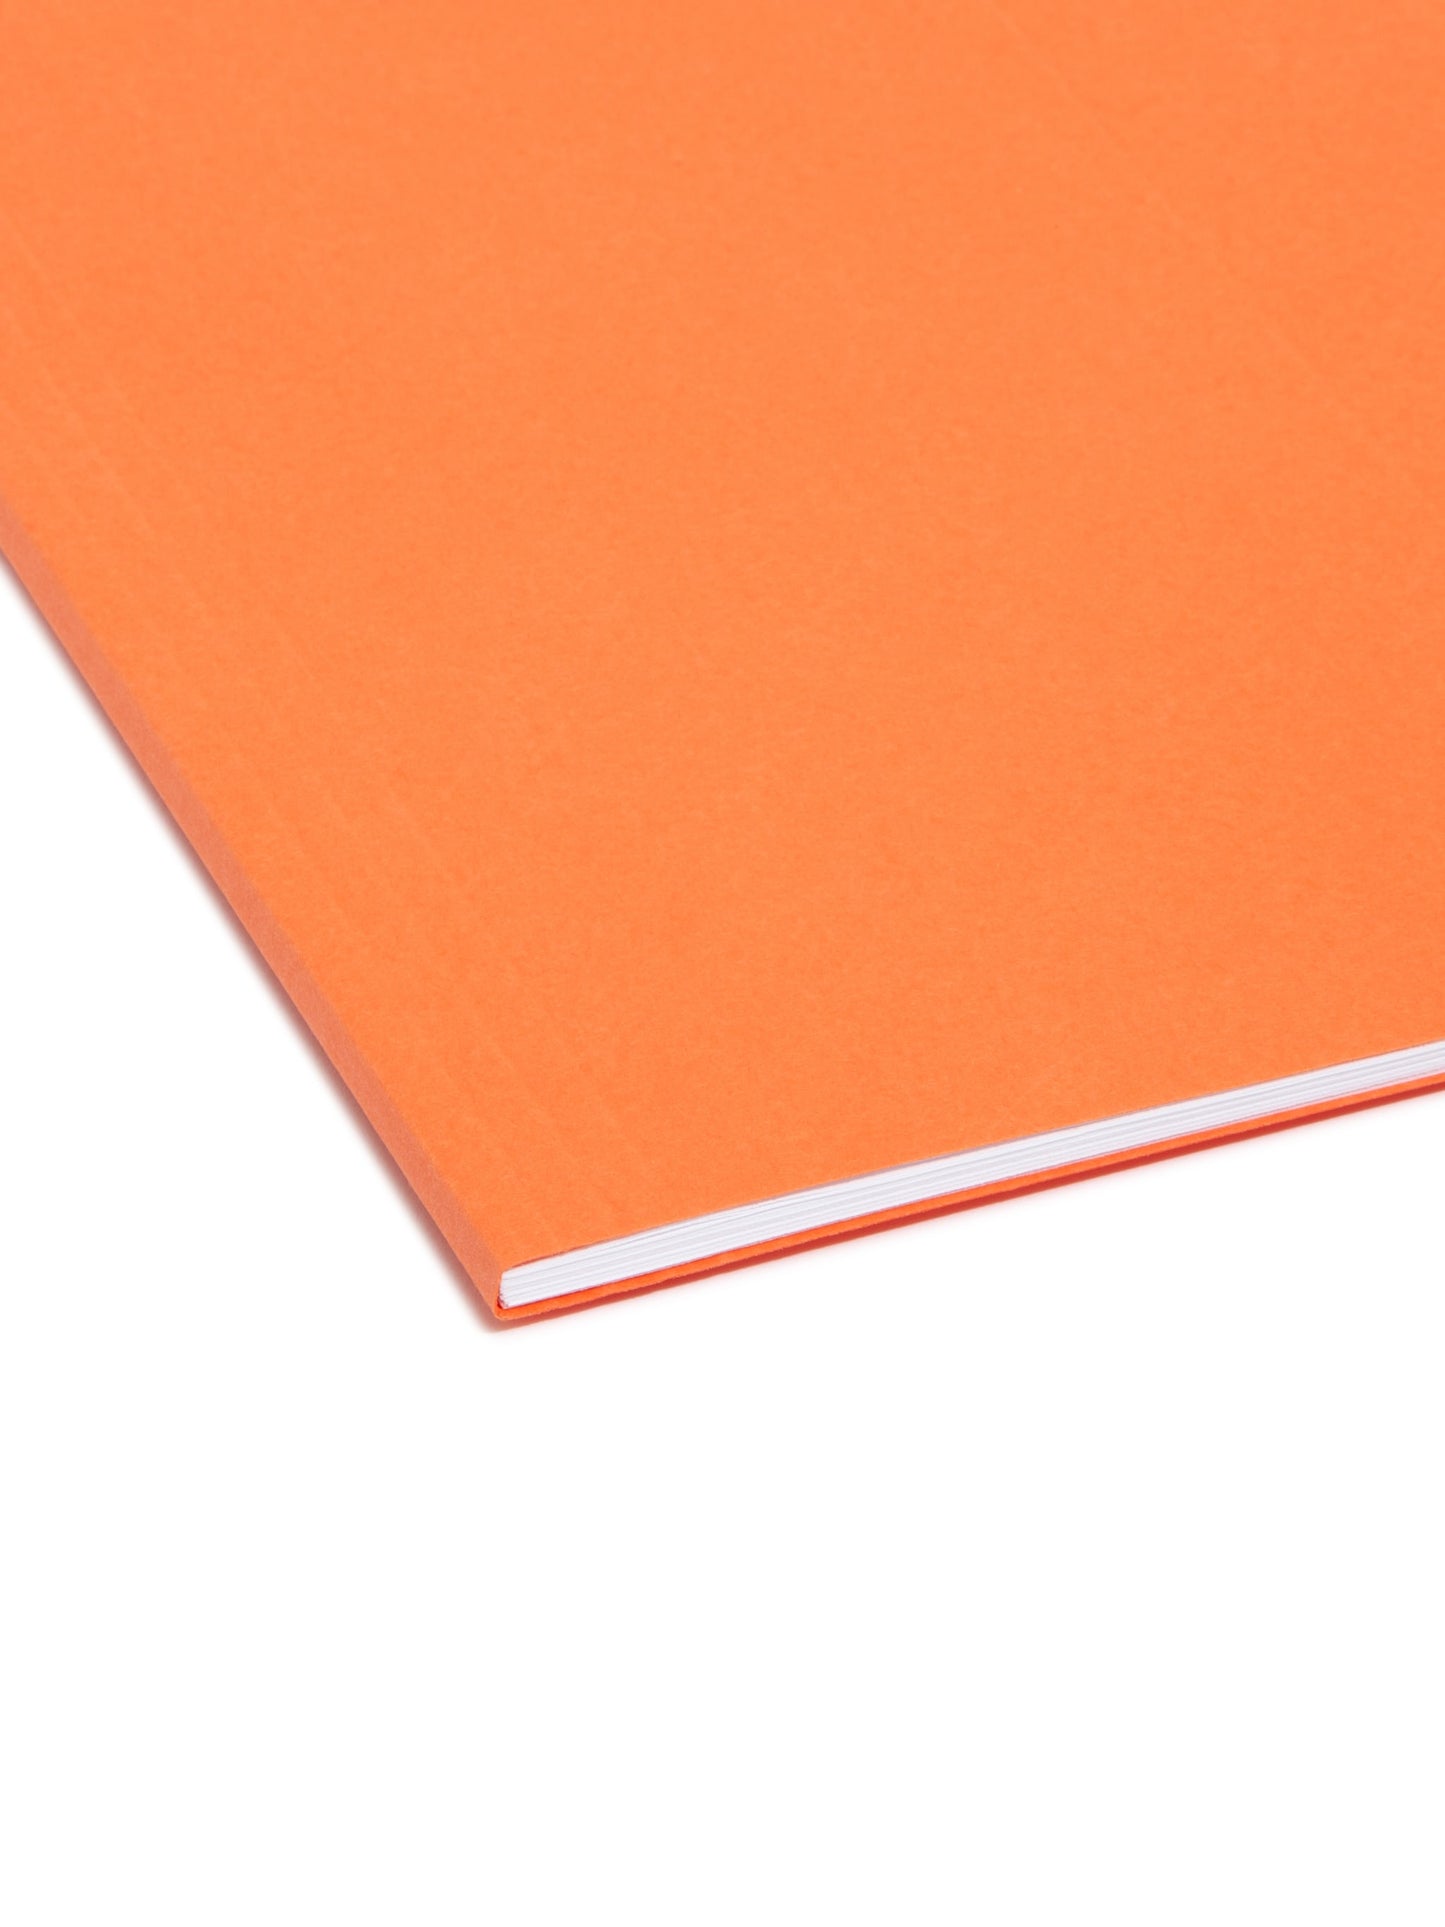 Standard Hanging File Folders with 1/5-Cut Tabs, Orange Color, Letter Size, Set of 25, 086486640657